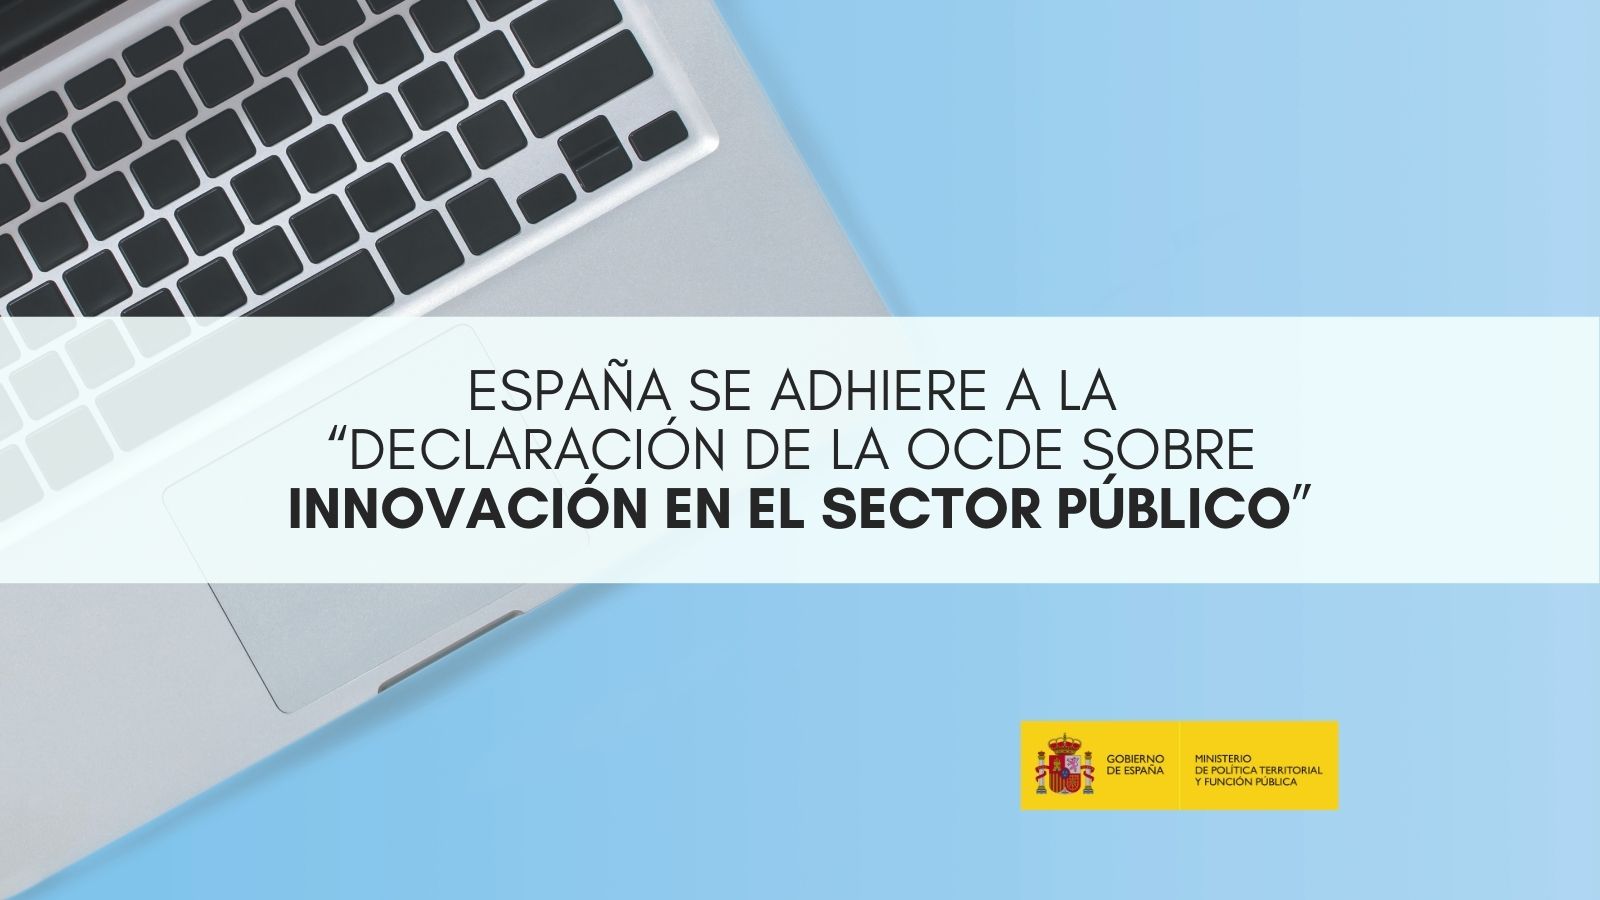 España se adhiere a la “Declaración de la OCDE sobre Innovación en el Sector Público”